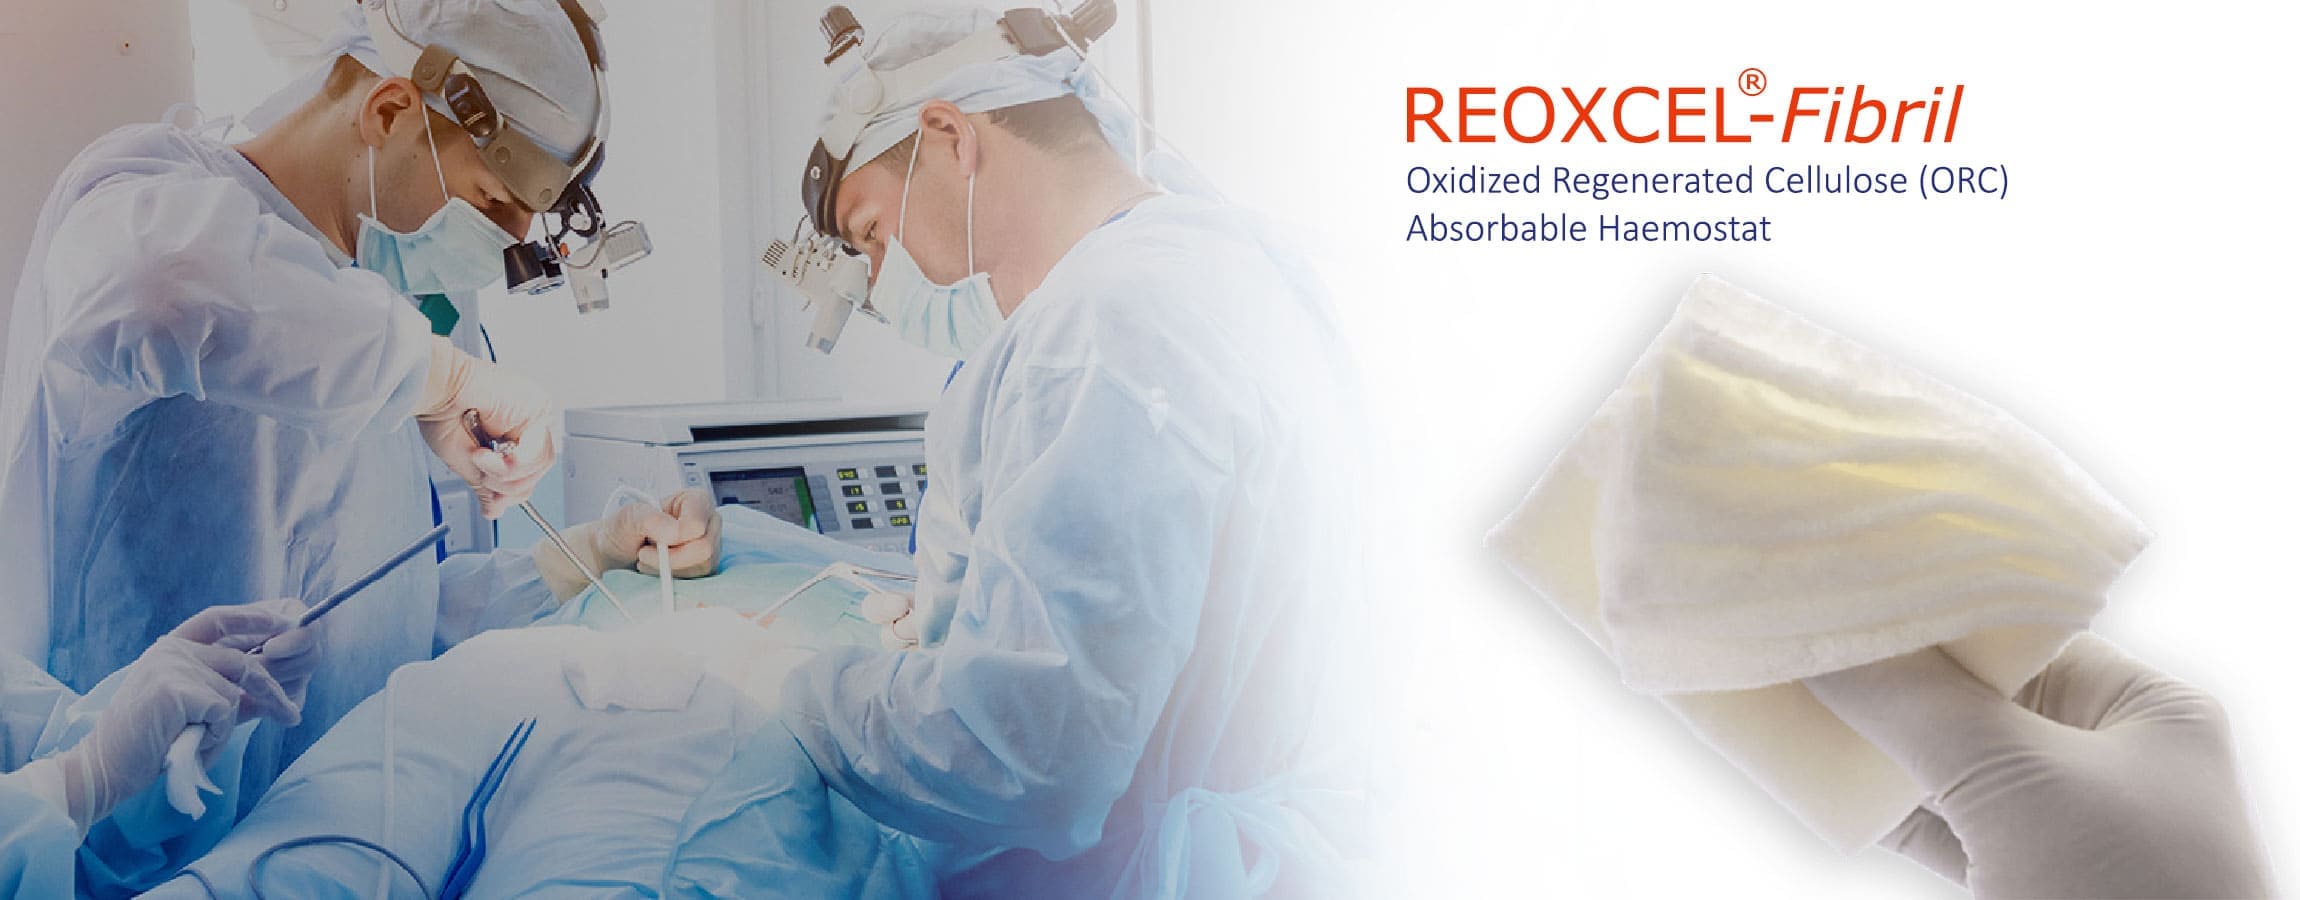 Reoxcel Fibril absorbierbares Hämostatikum ist ein steriles hämostatisches (blutstillendes) Präparat, das aus oxidierter regenerierter Cellulose (ORC) (Polyanhydrid-Glucuronsäure) hergestellt wird und eine antibakterielle Wirkung gegen 40 Arten von Mikroorganismen hat.